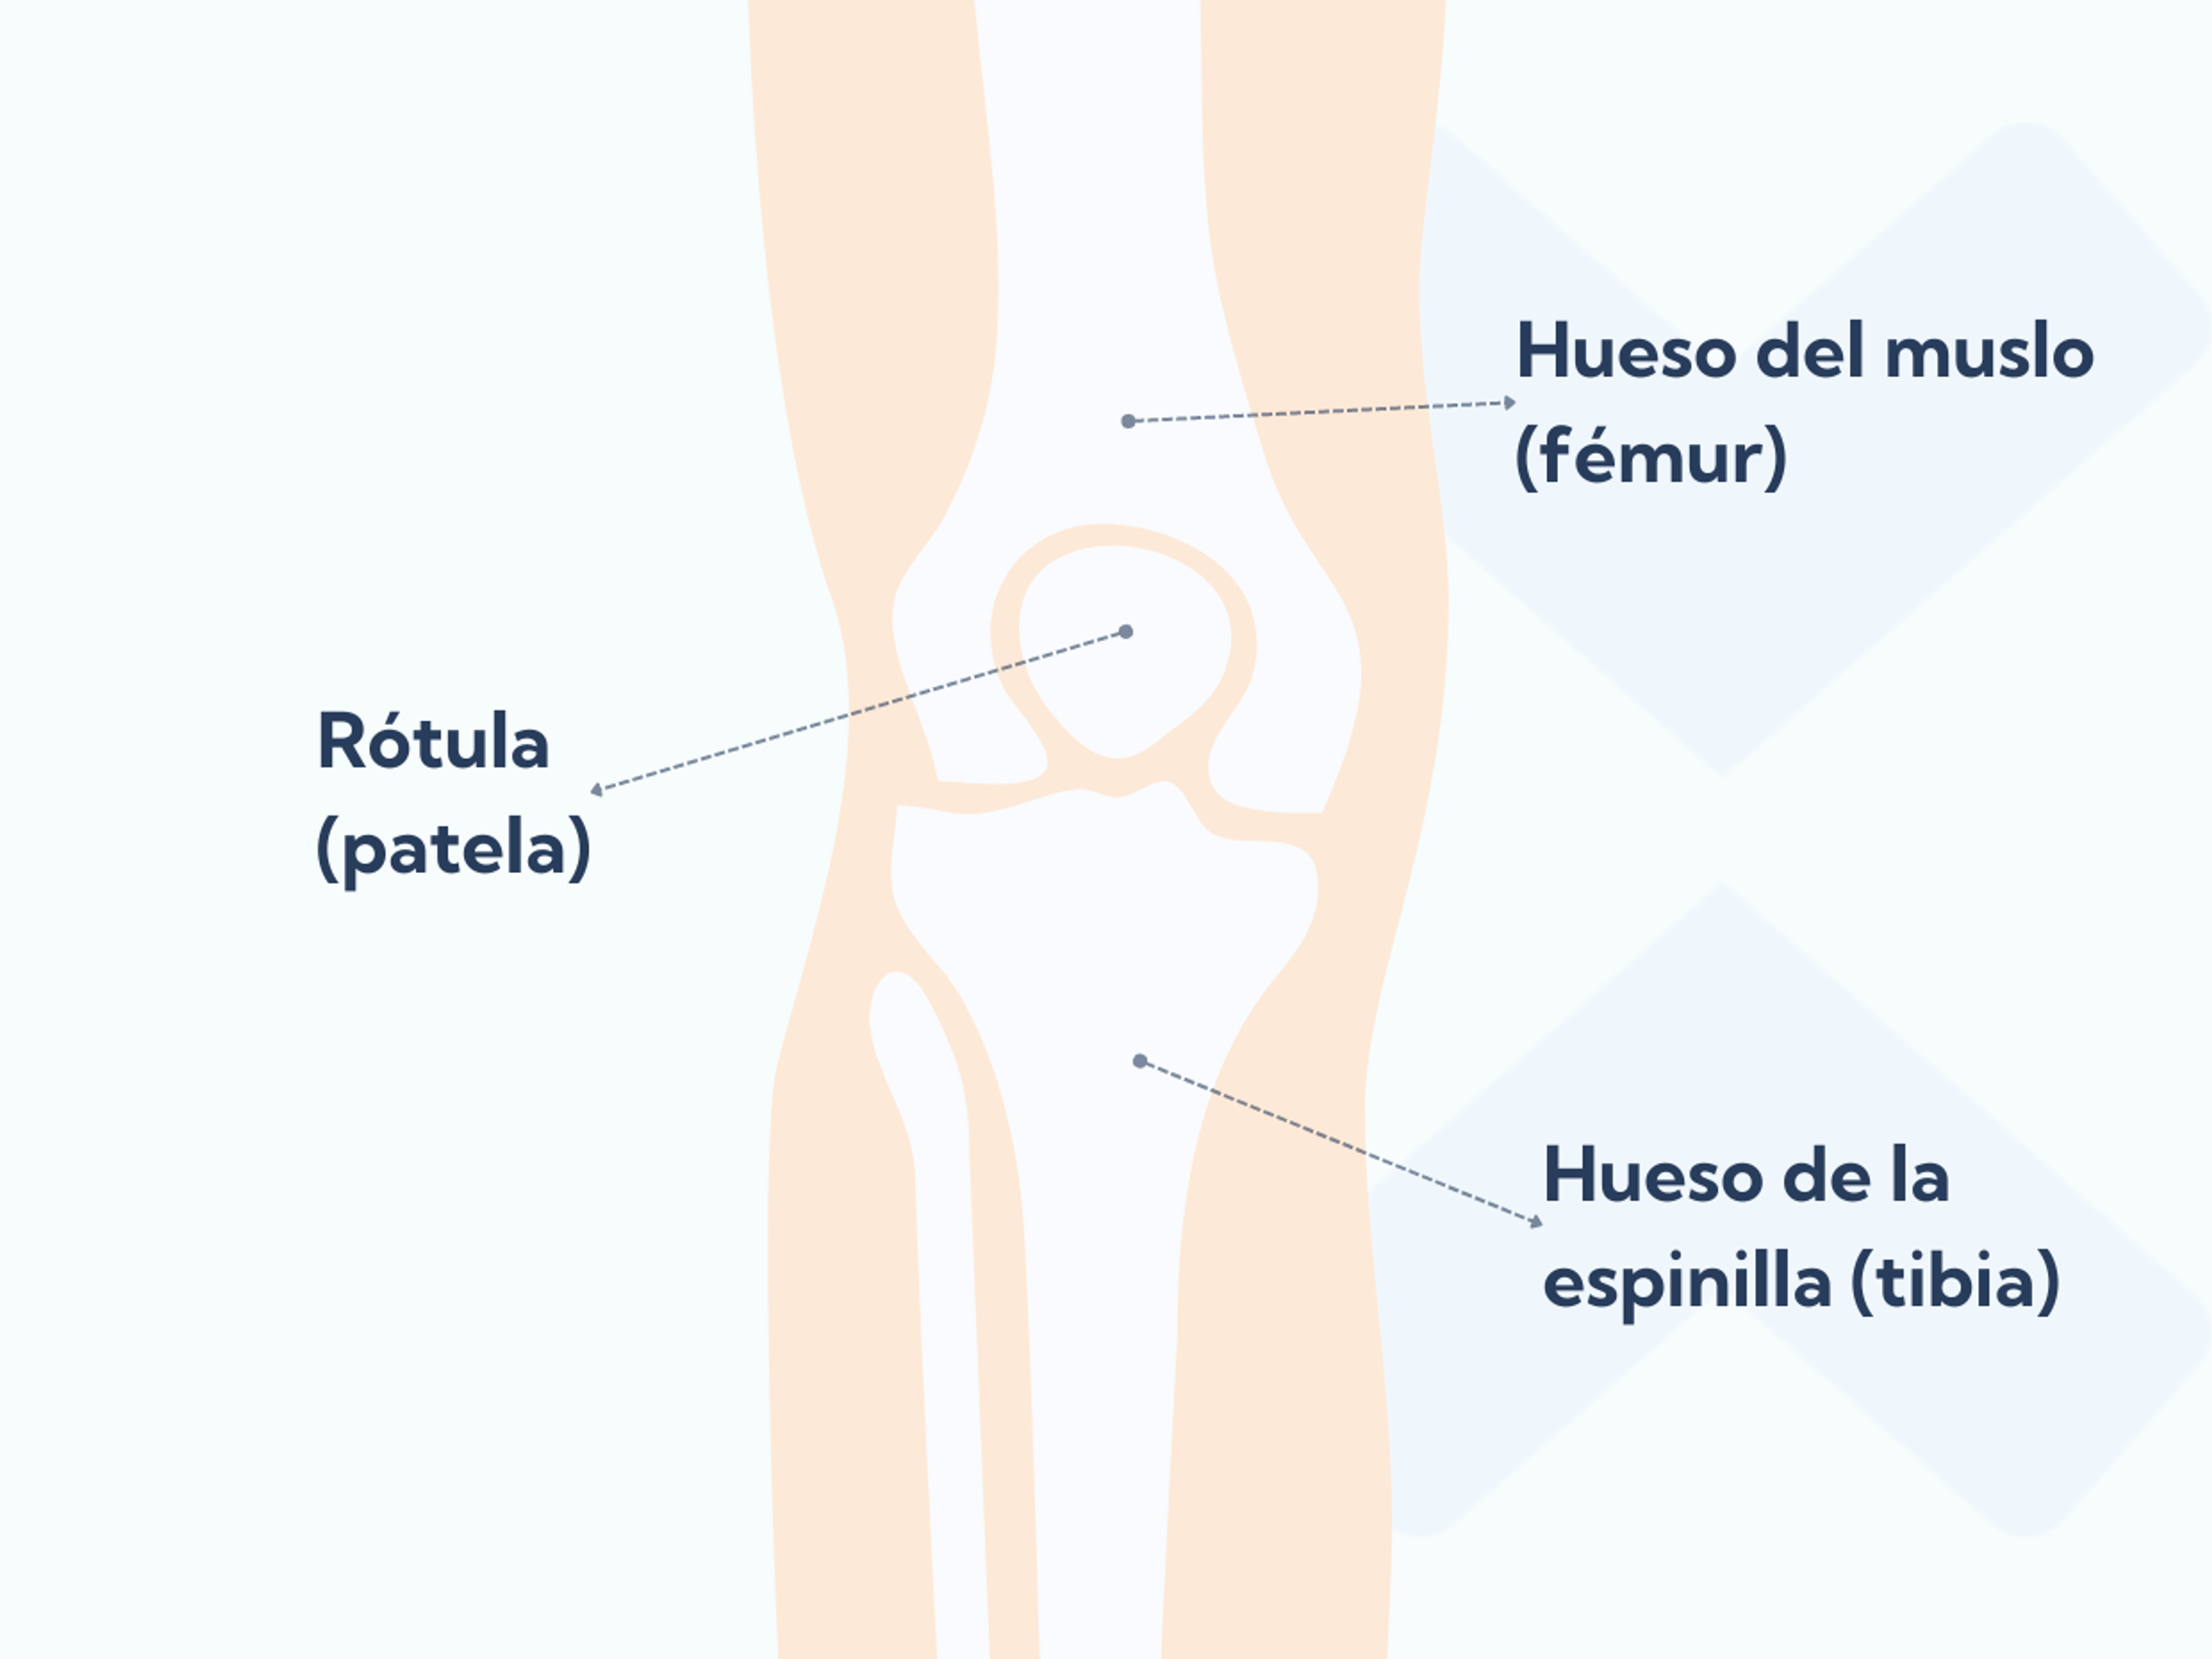 La anatomía de la articulación patelofemoral con la rótula, el hueso de la espinilla y el hueso del muslo.